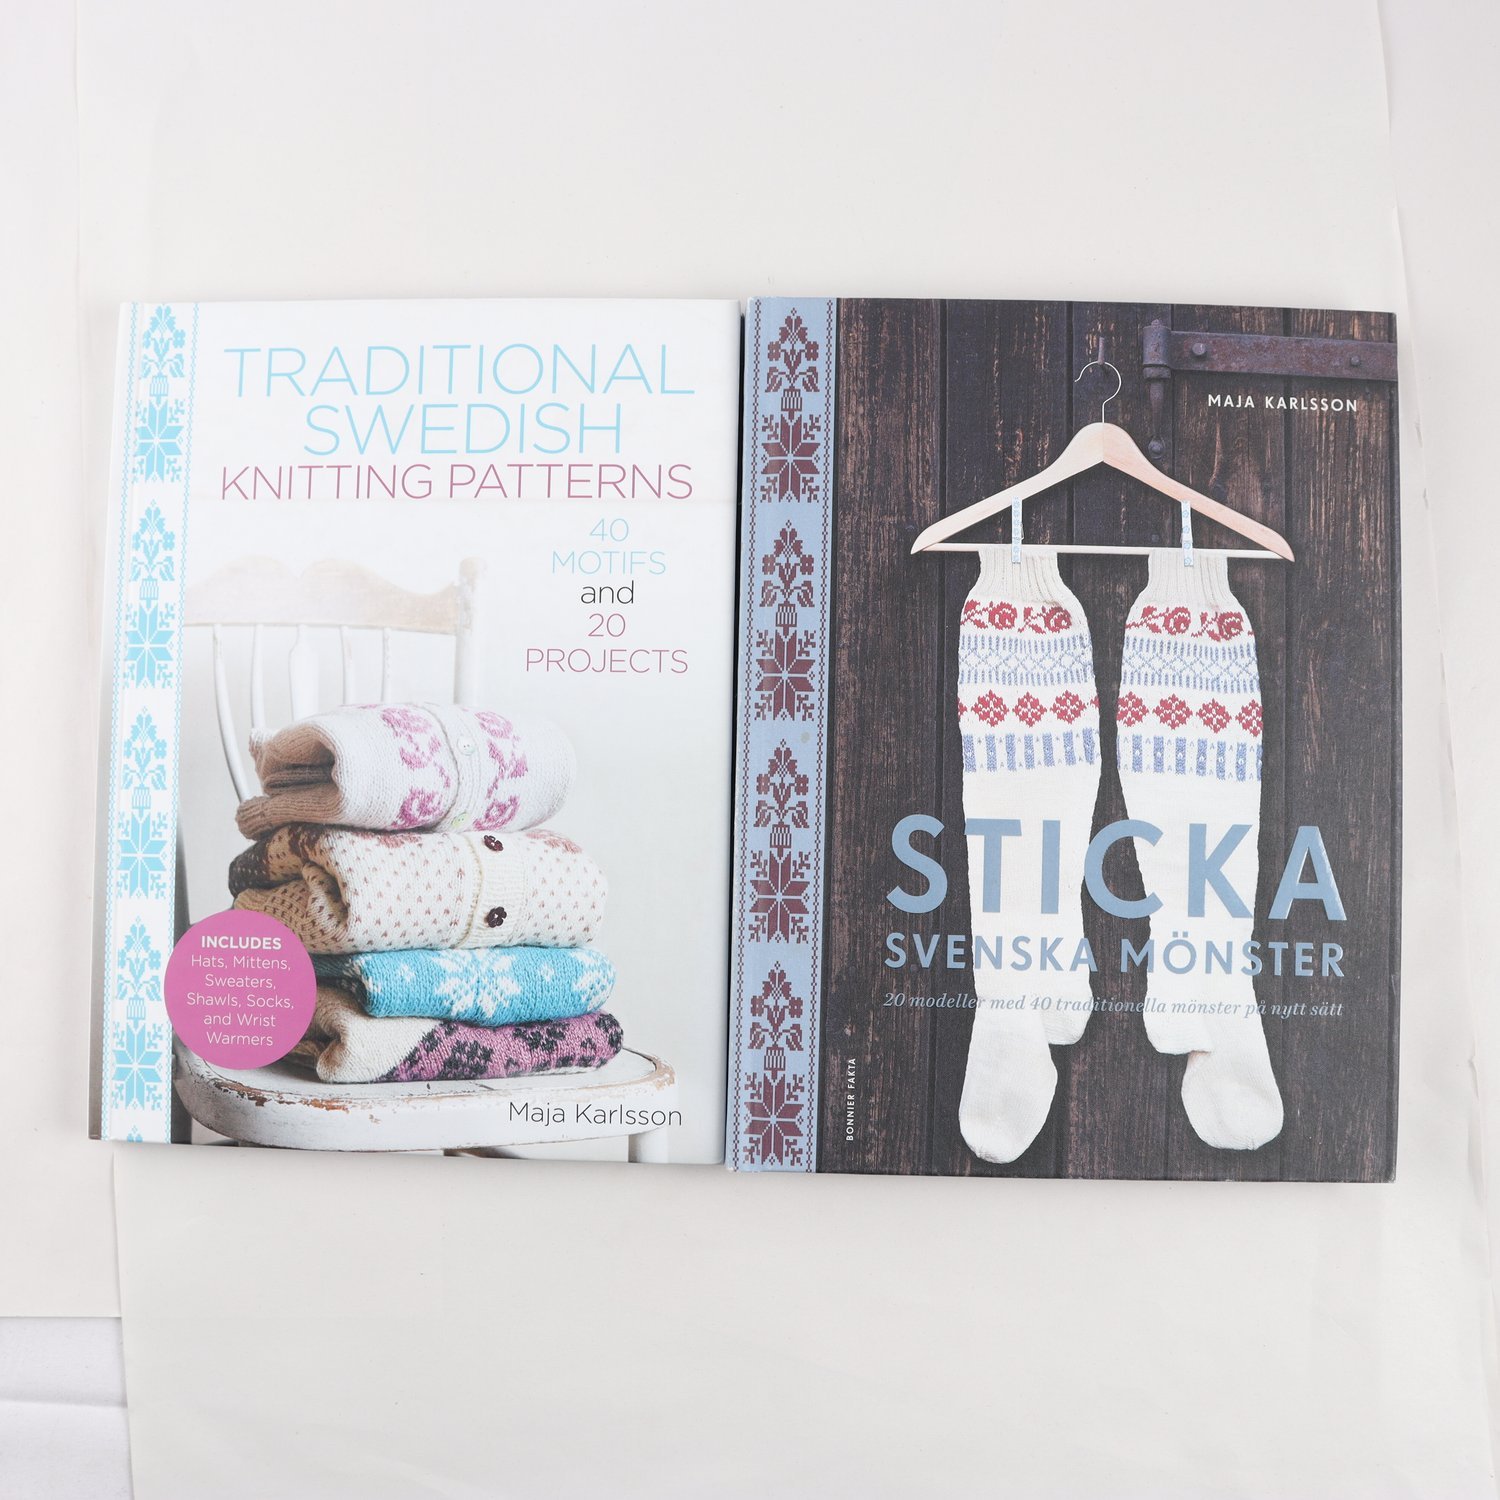 Sticka svenska mönster + Traditional Swedish Knitting Patterns